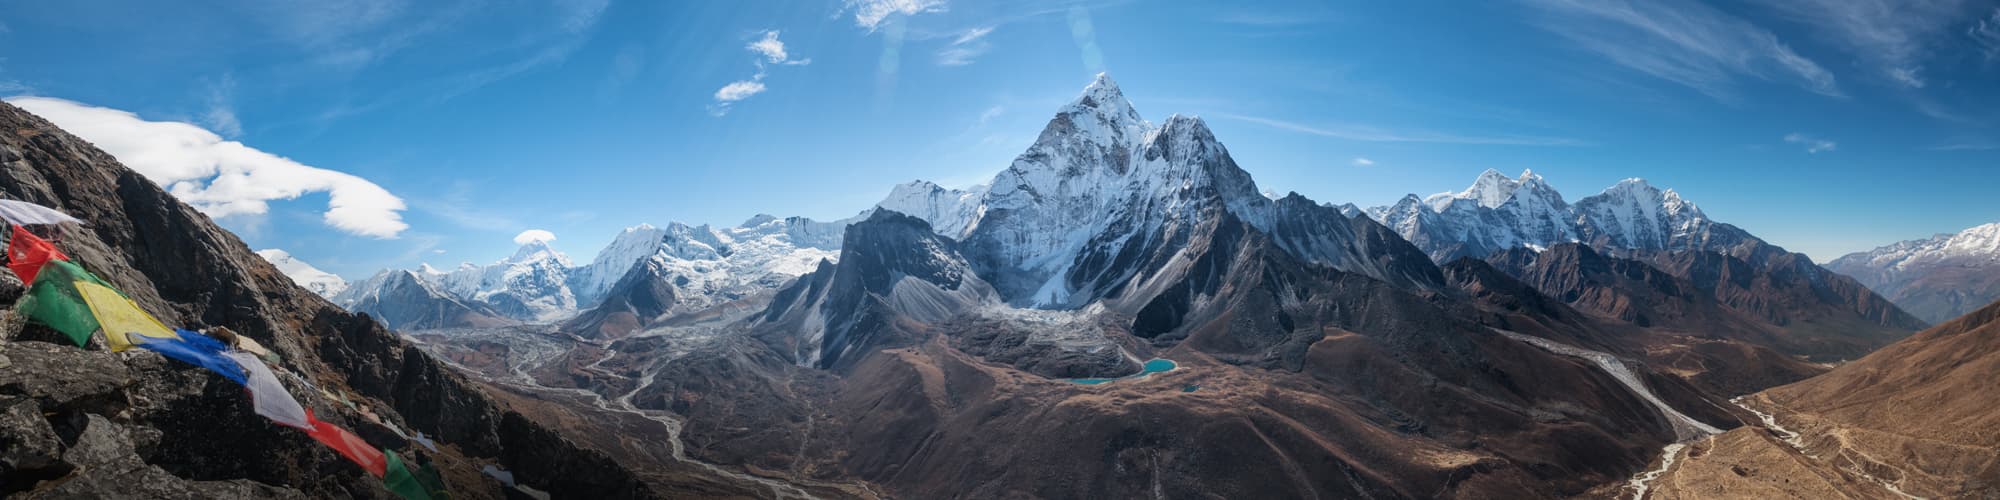 Découverte Inde Himalayenne © Alex Shestakov / Adobe Stock